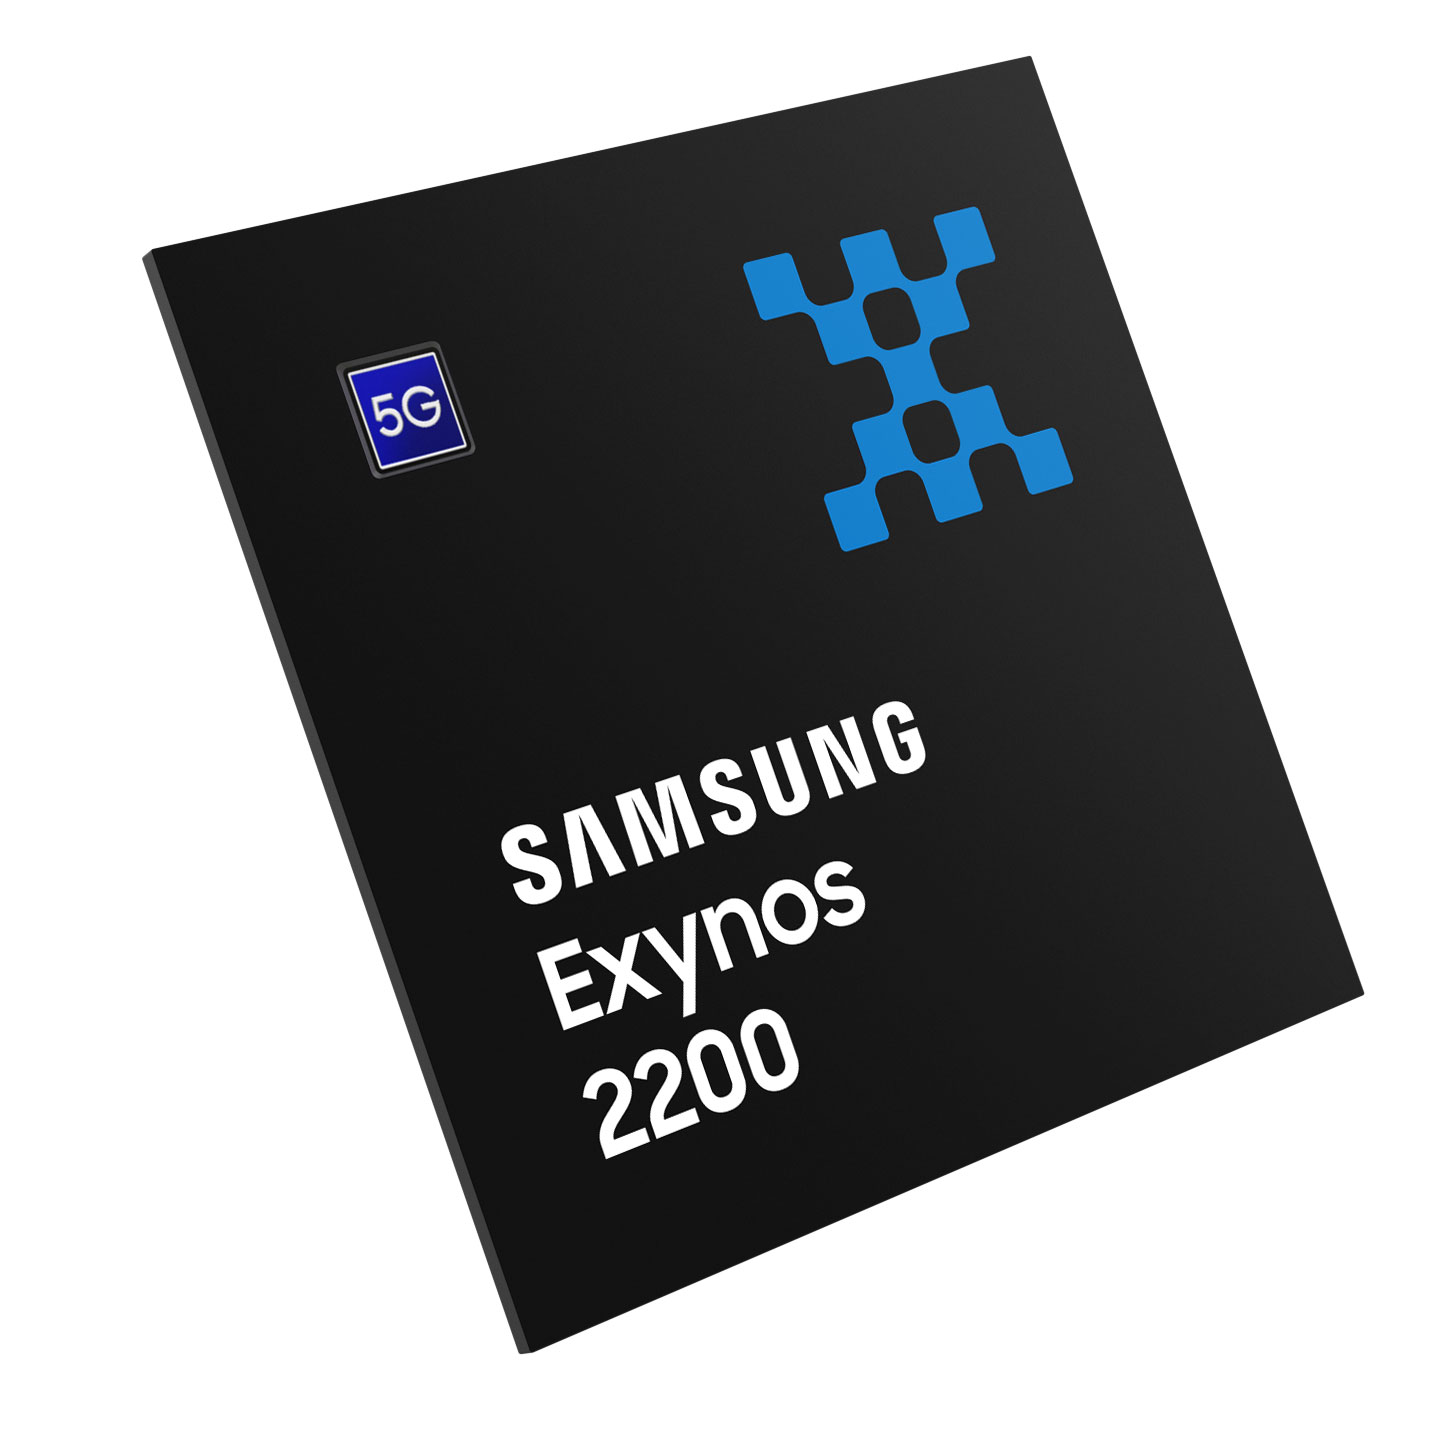 procesor Samsung Exynos 2200 processor